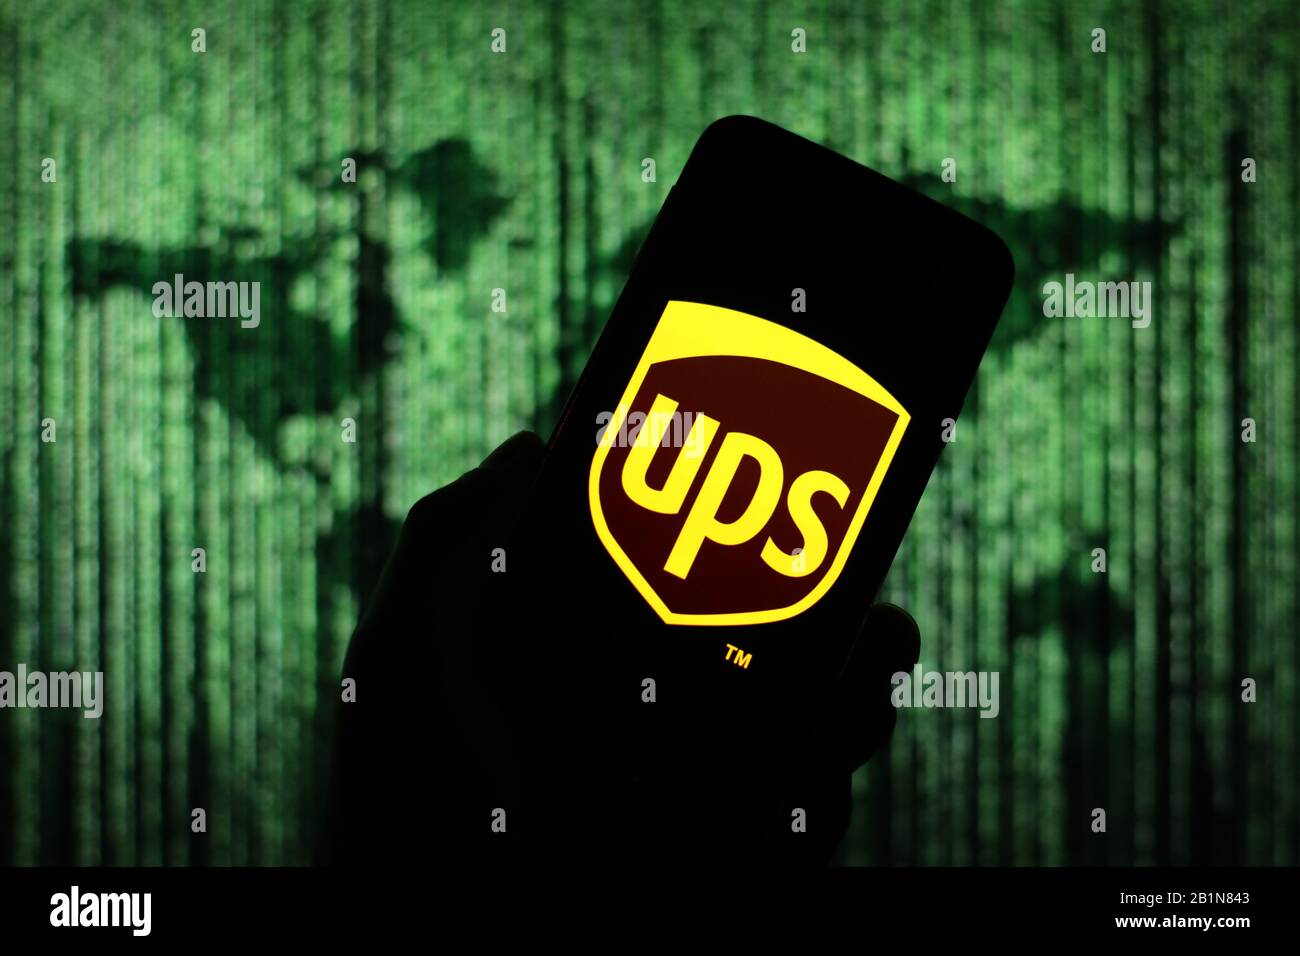 Das UPS-Logo der Versandfirma wird auf dem Smartphone-Bildschirm mit einer Matrix-ähnlichen Weltkarte angezeigt, die im Hintergrund verschwommen zu sehen ist Stockfoto